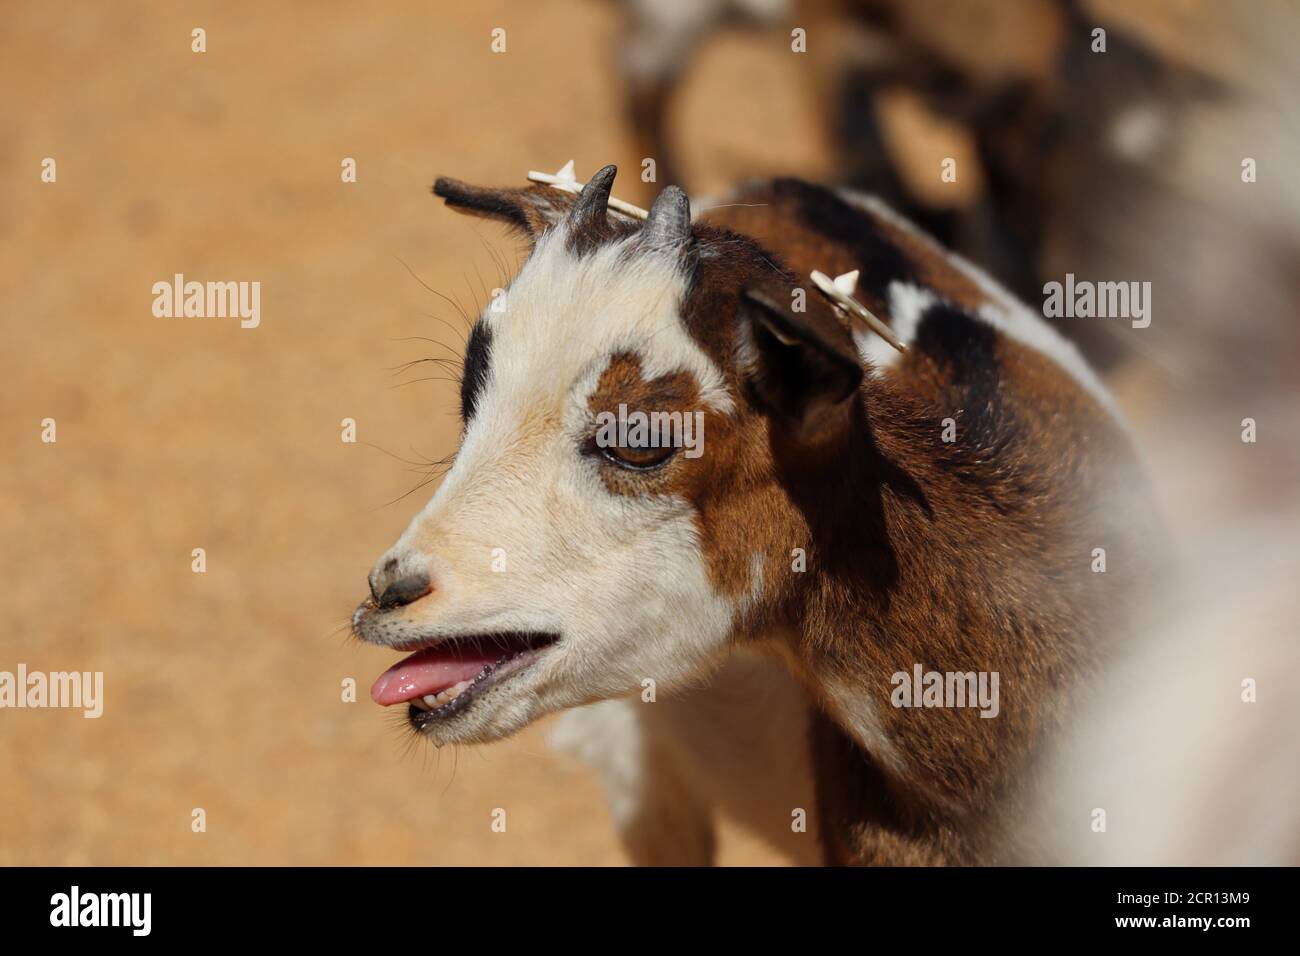 Cute baby Goat bleat nel Parco Zoo. Il pigmeo americano è una razza americana del capra di Acondroplastica che è anche conosciuta come pigmeo o pigmeo africano. Foto Stock